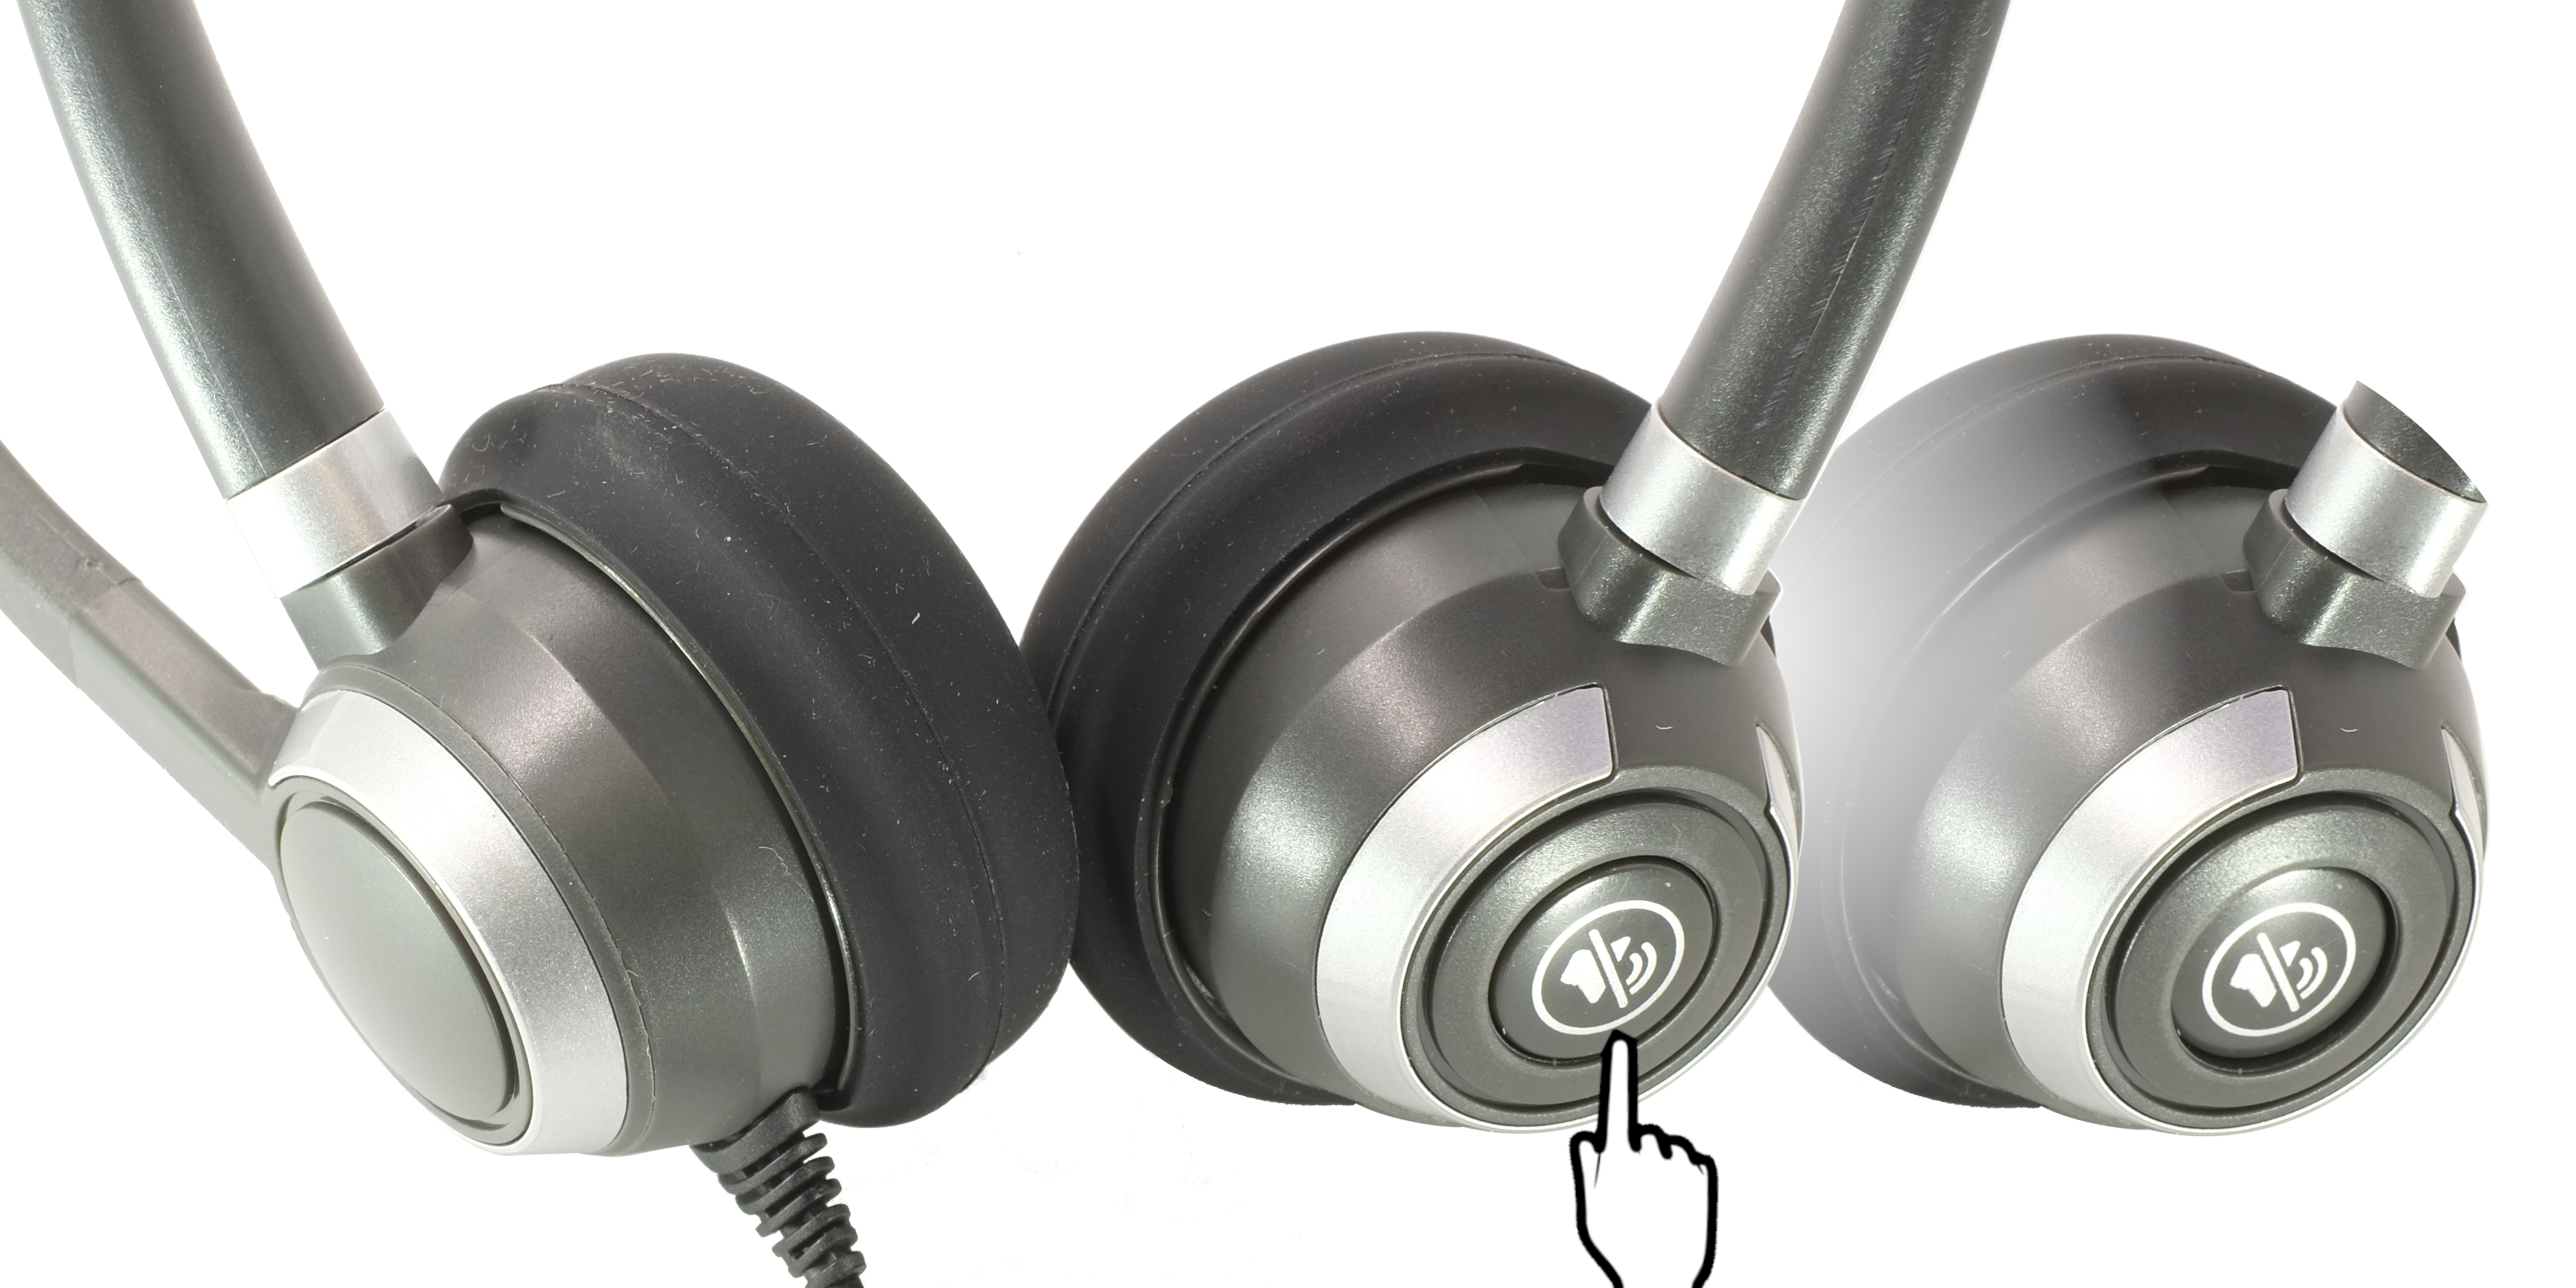 Cisco phone Call Center headset Dual Ear, Single Ear